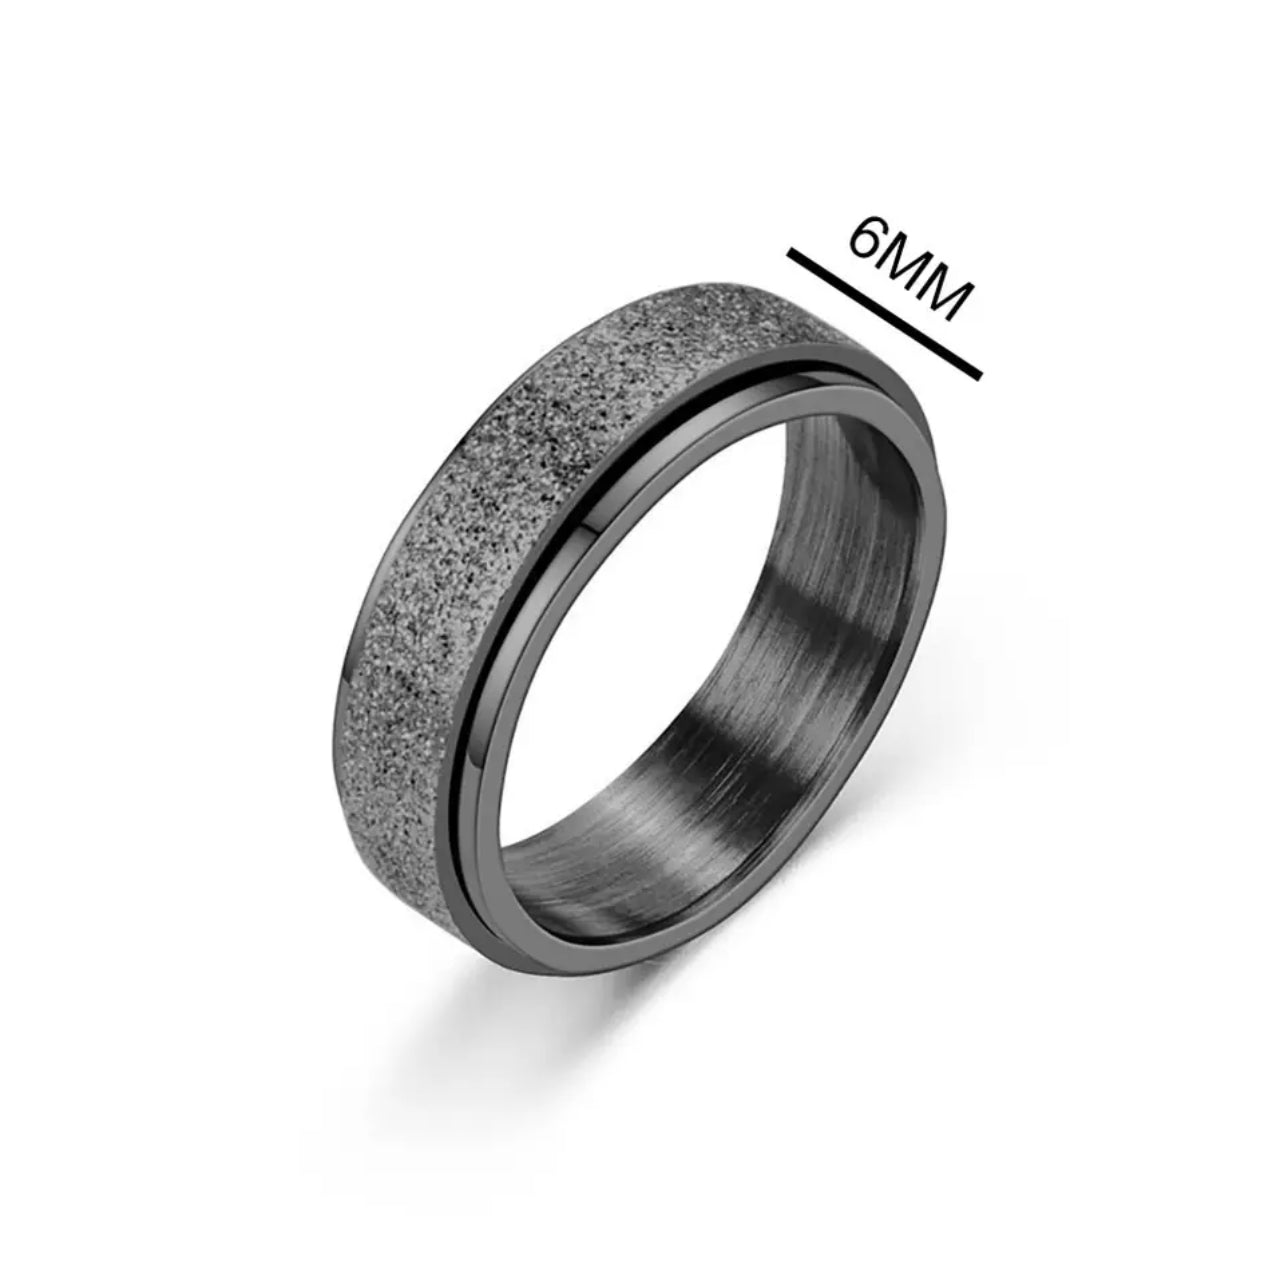 Black Spinner Fidget Band Ring in Stainless Steel